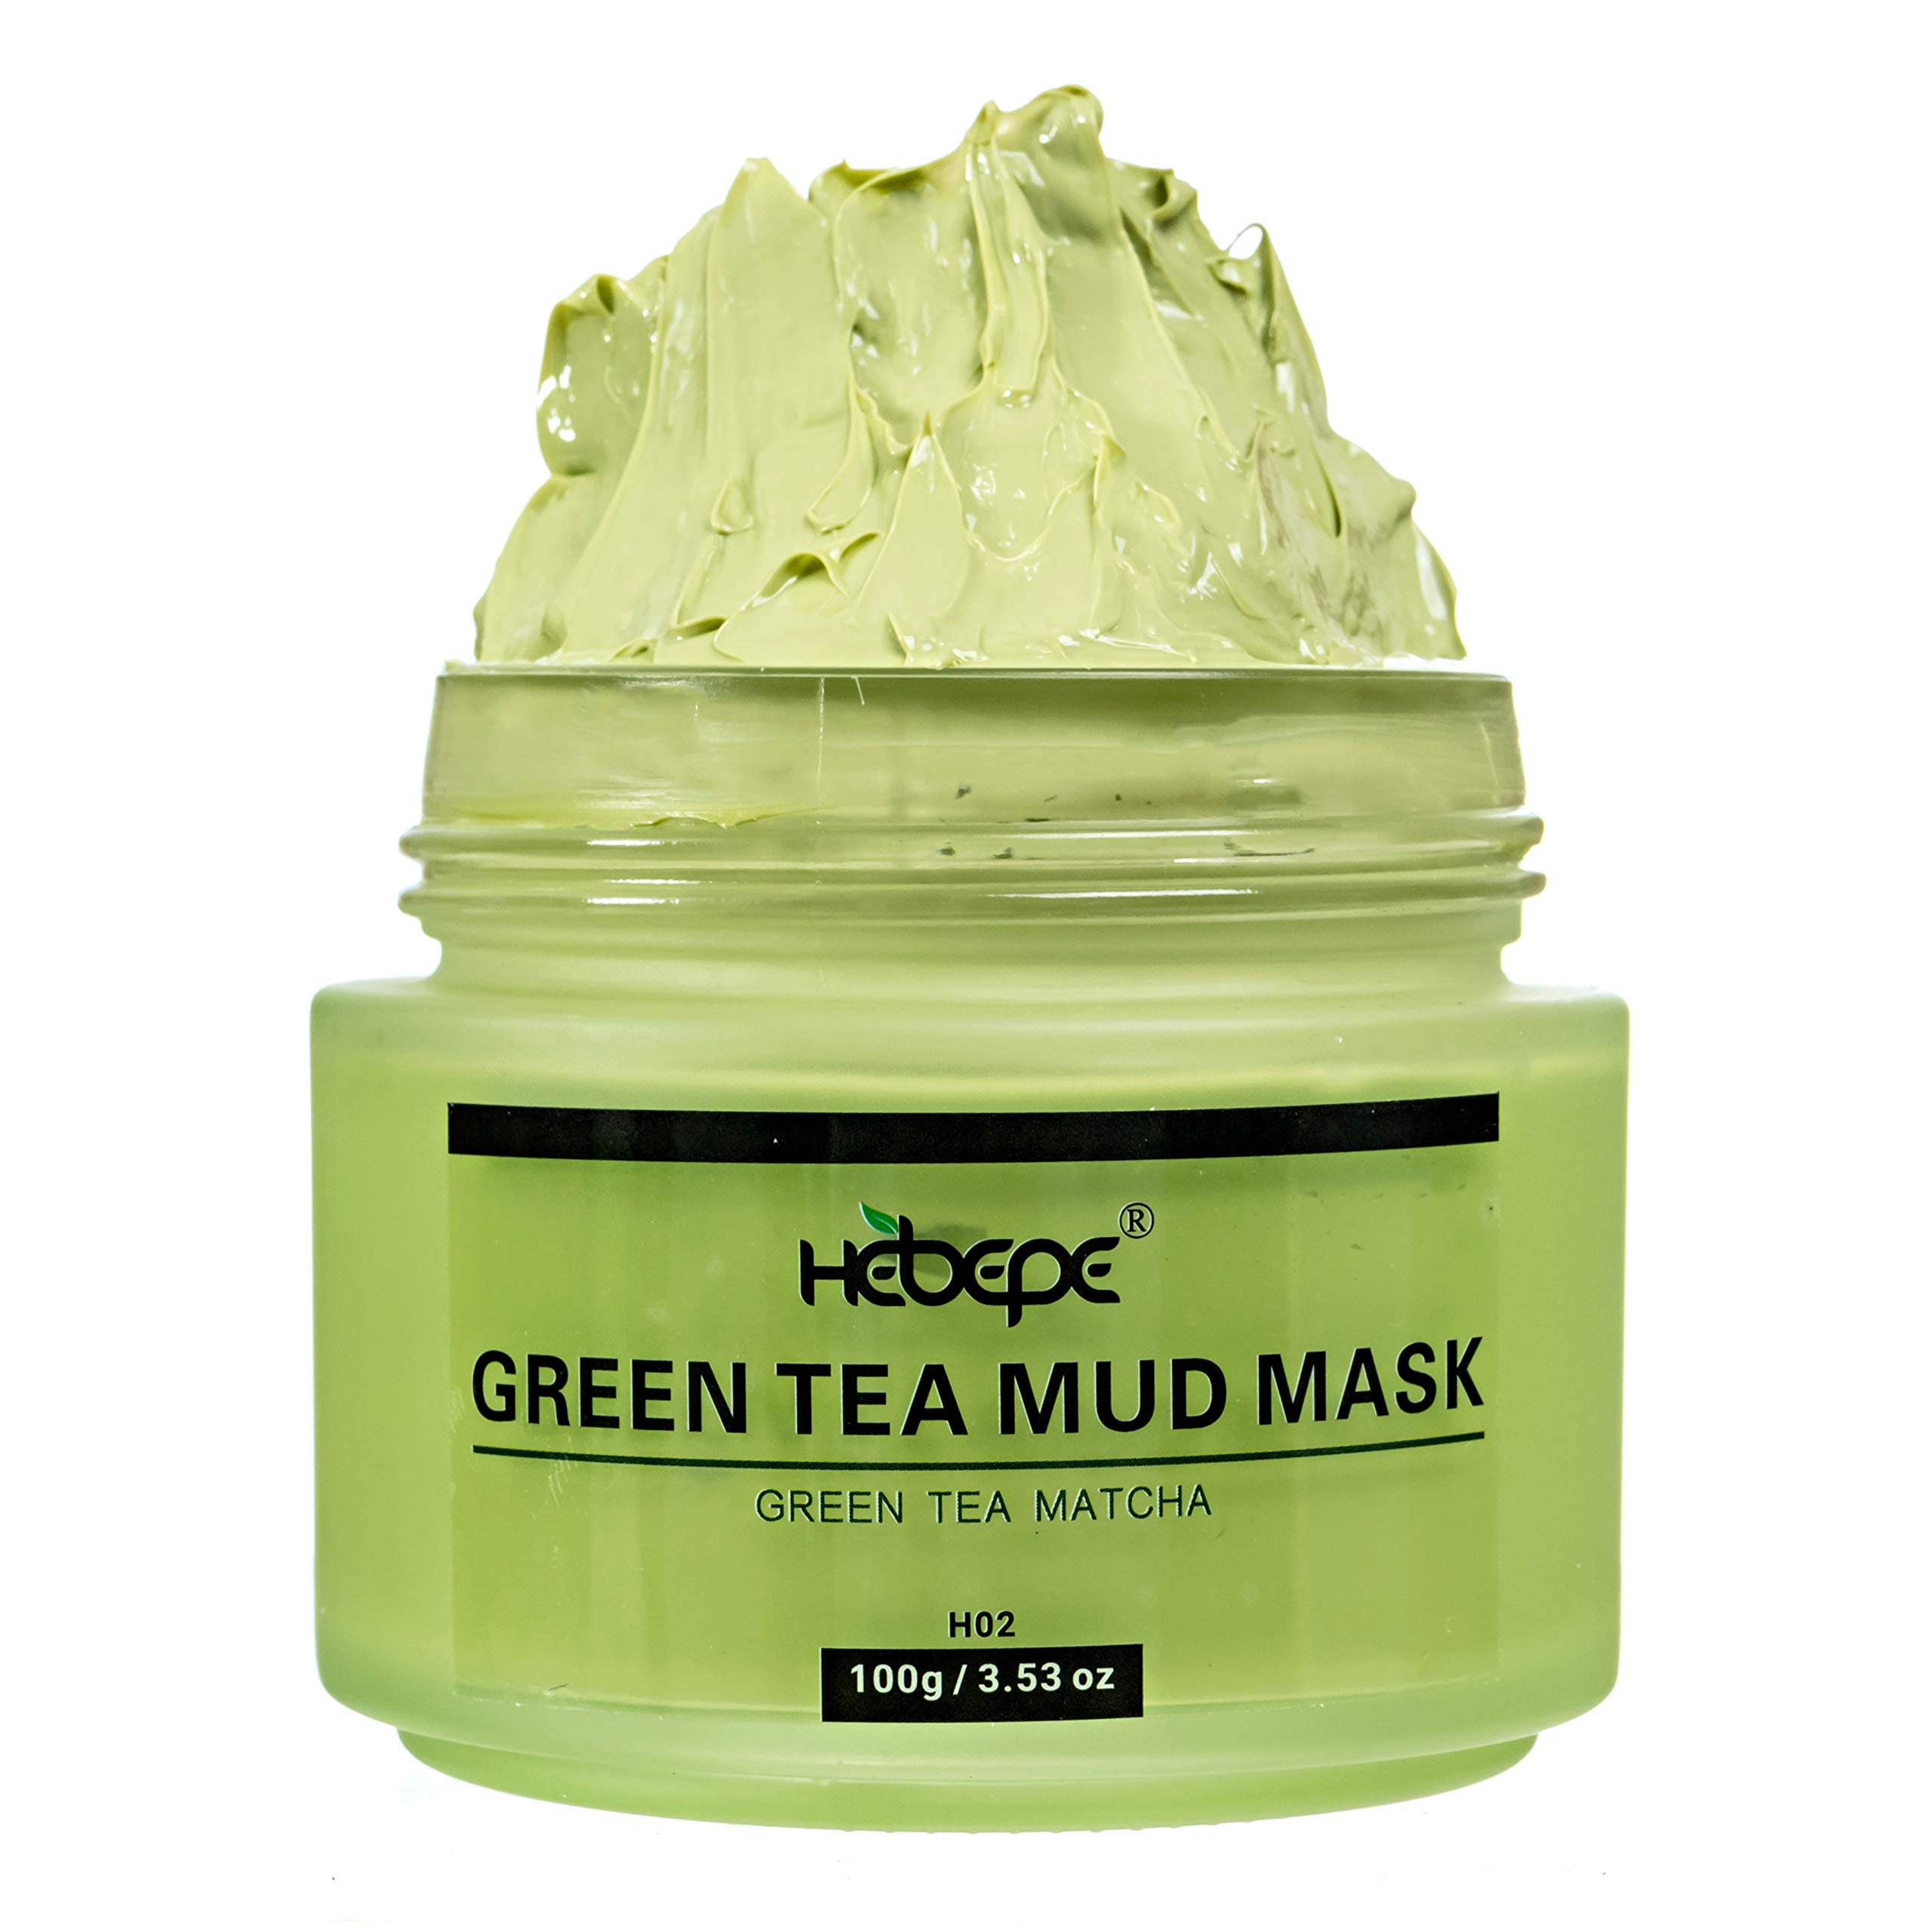 Hebepe + Hebepe Matcha Green Tea Facial Detox Mud Mask